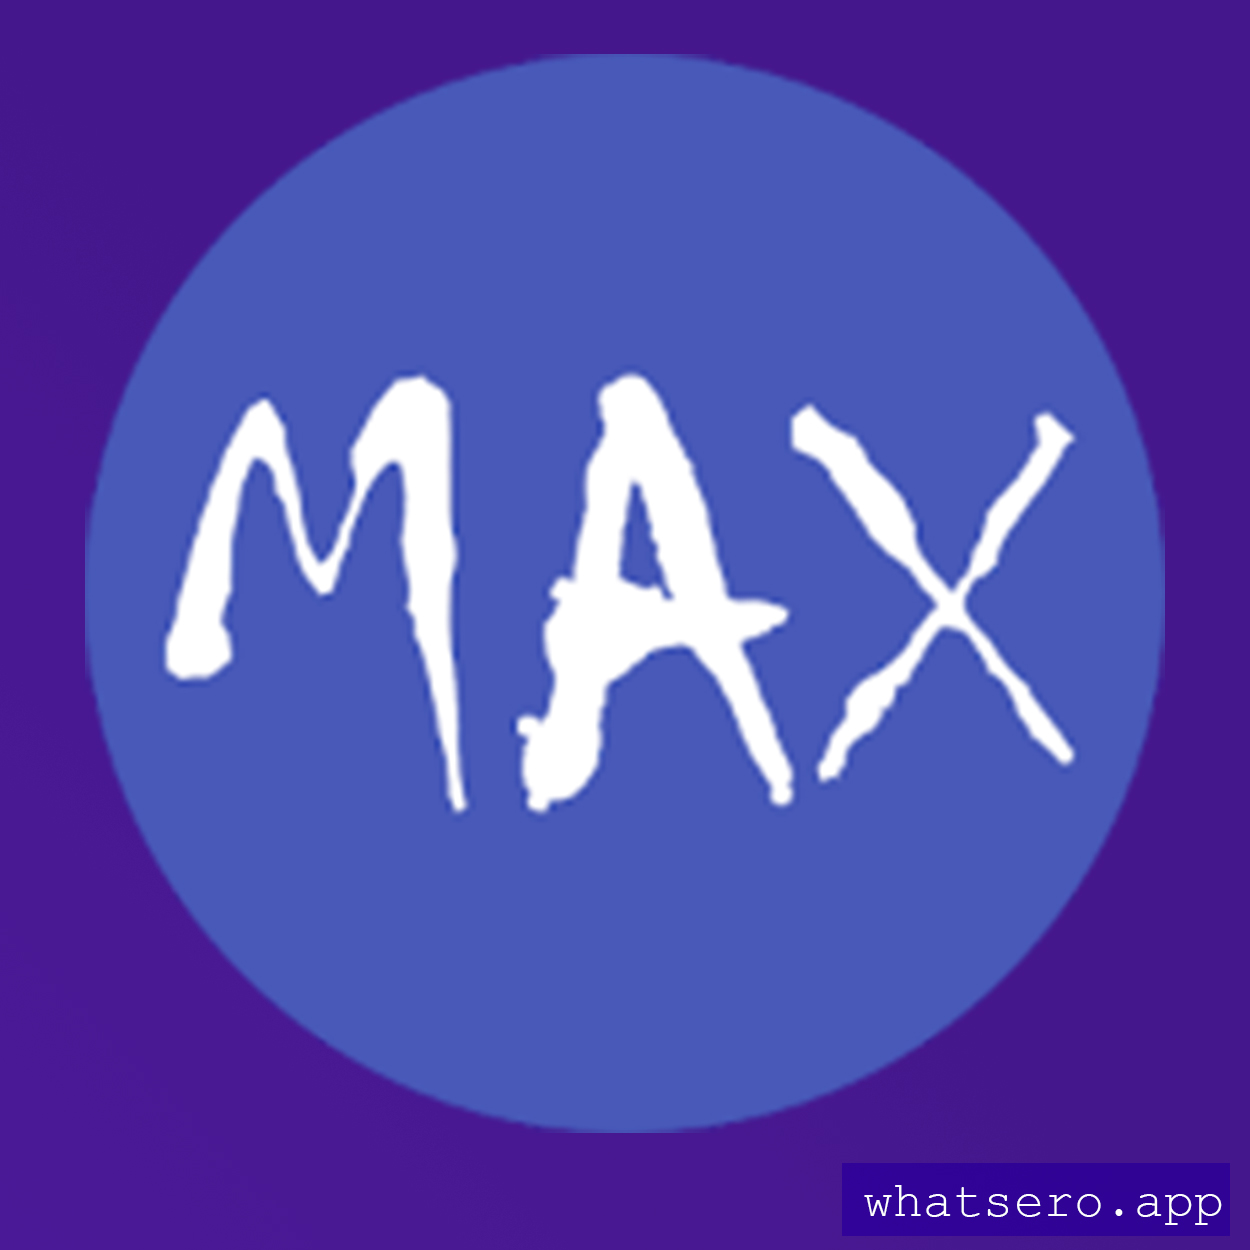 Maxslayer logo